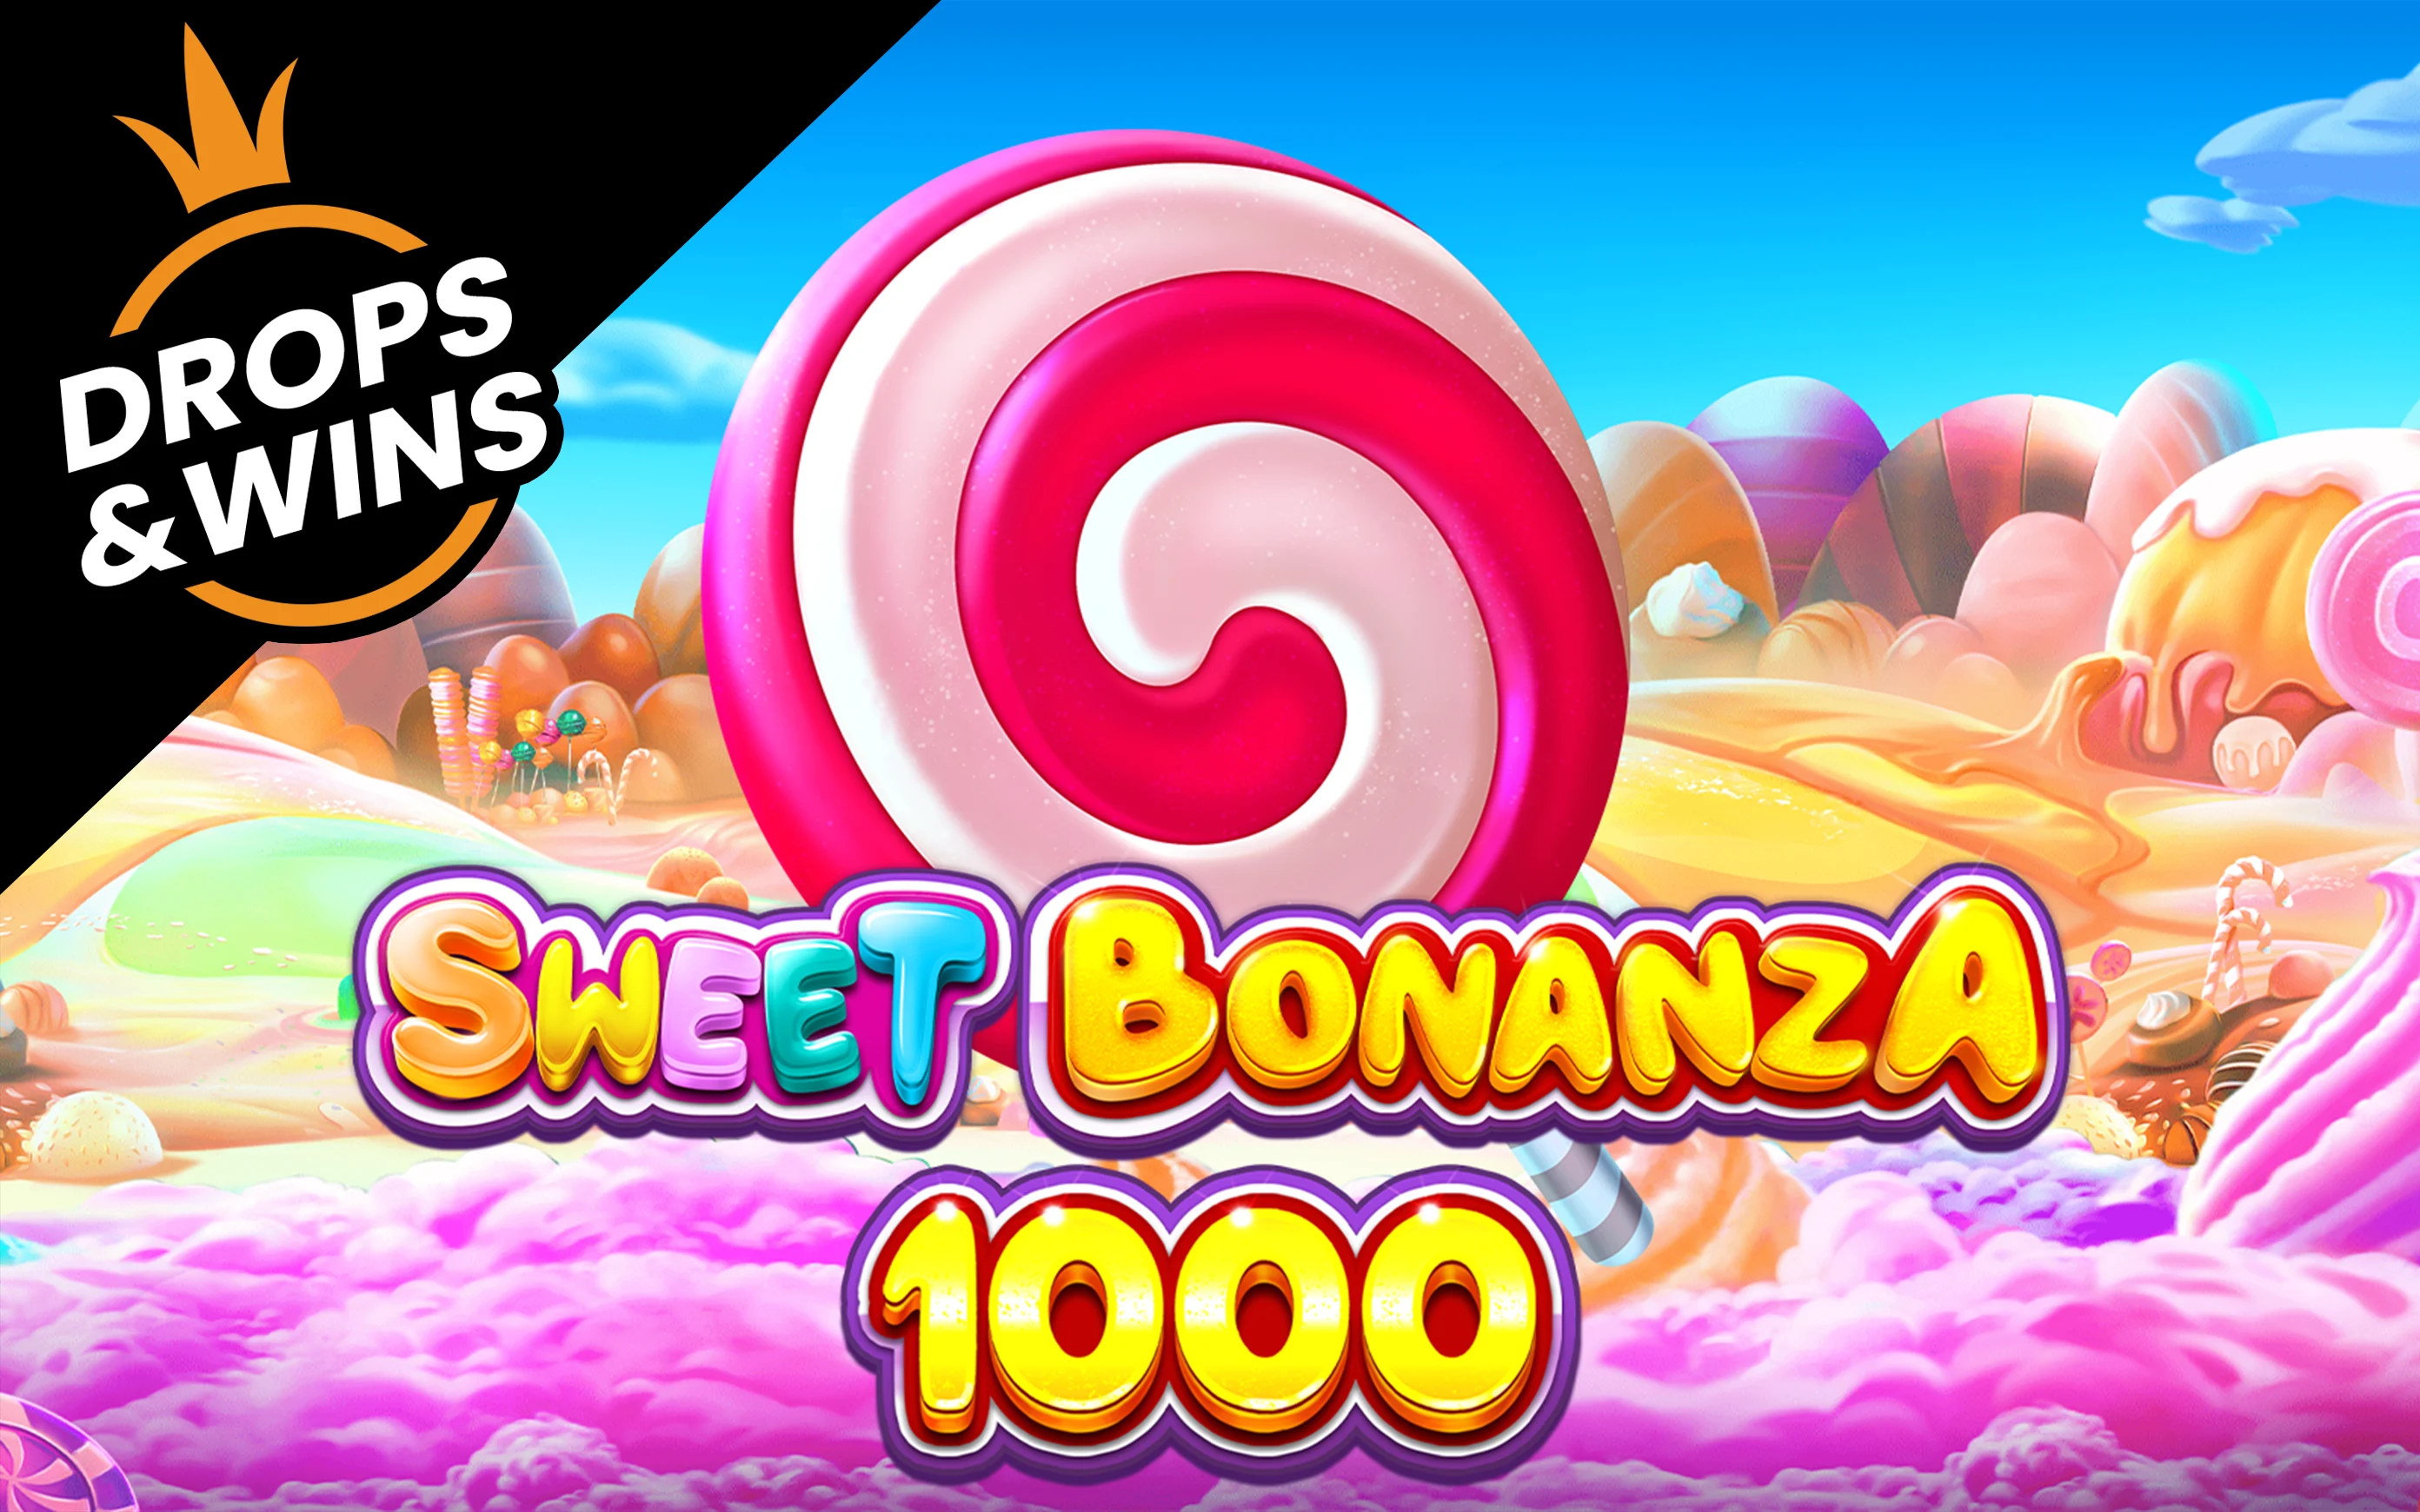 Играйте в Sweet Bonanza 1000 в онлайн-казино Starcasino.be